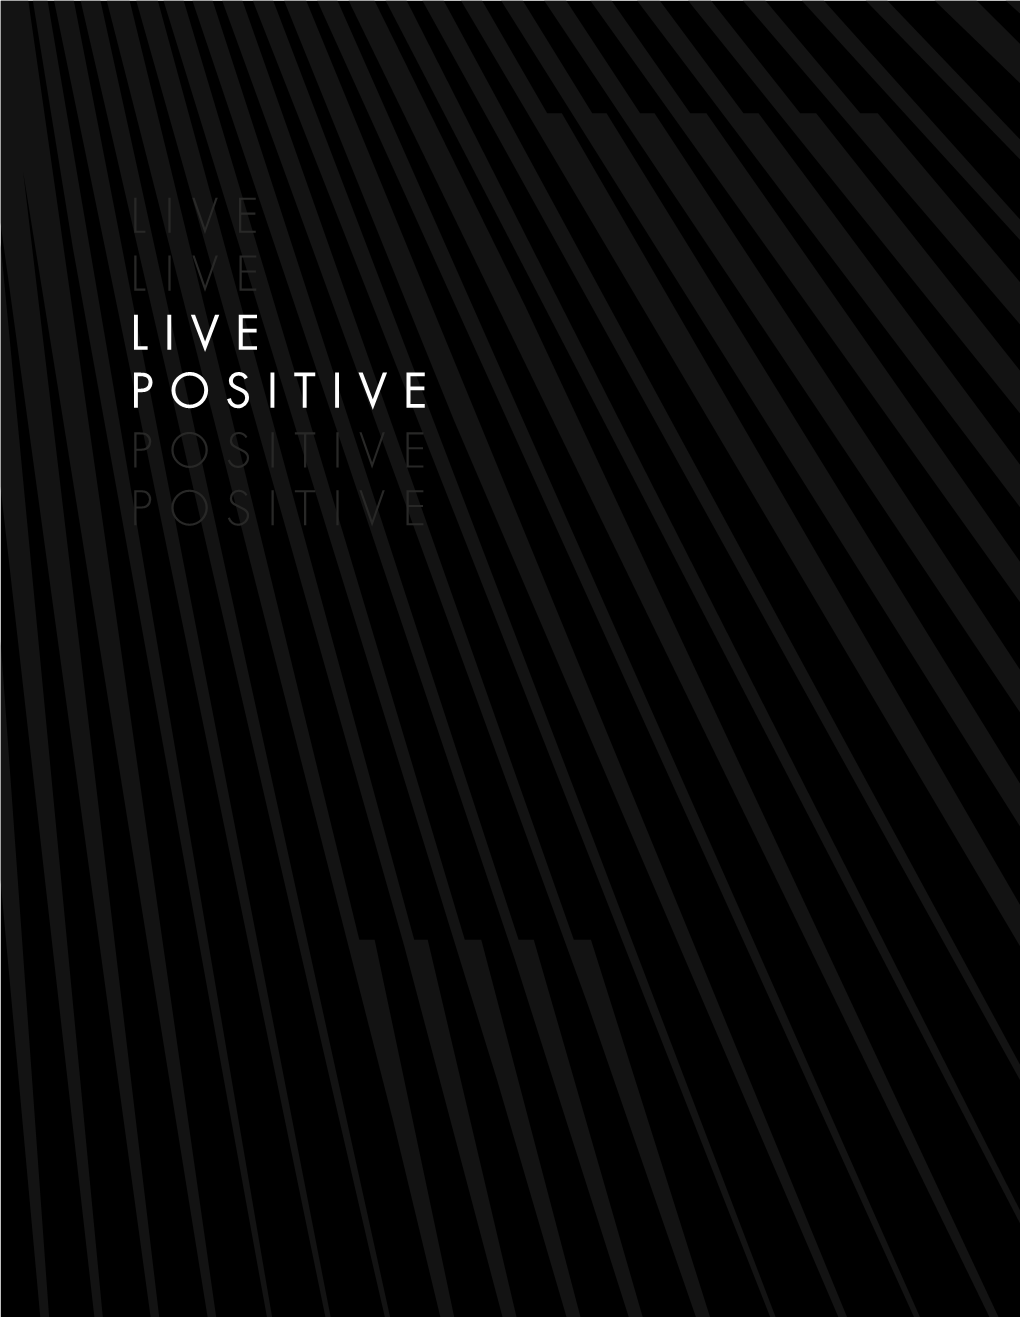 Live Positive Positive Positive